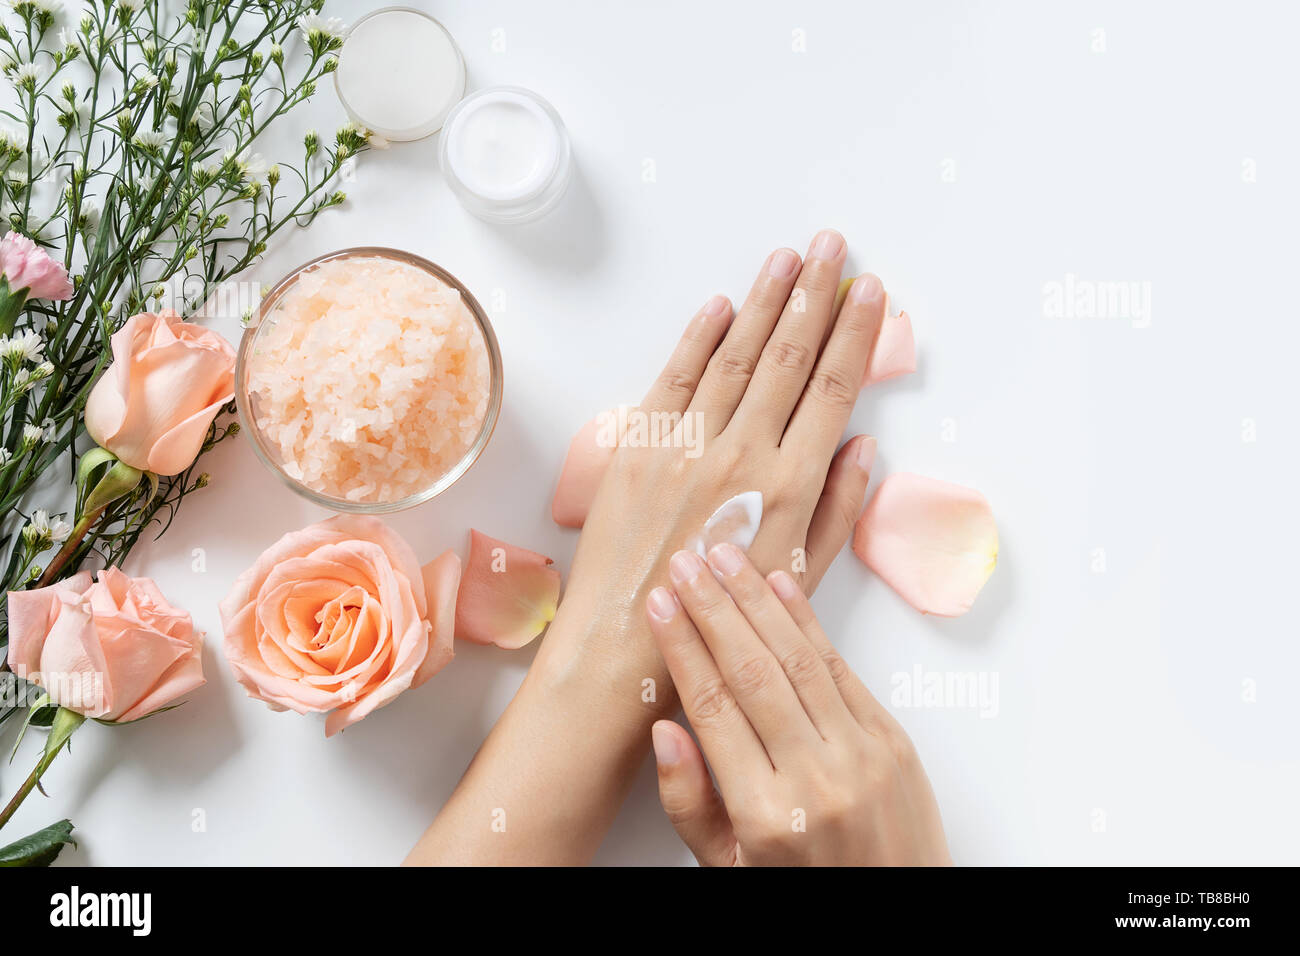 Soin naturel concept. femme appliquer la crème sur ses mains blanches sur fond blanc avec pot de crème cosmétique, spa, gommage sel rose et de fleurs blanches Banque D'Images